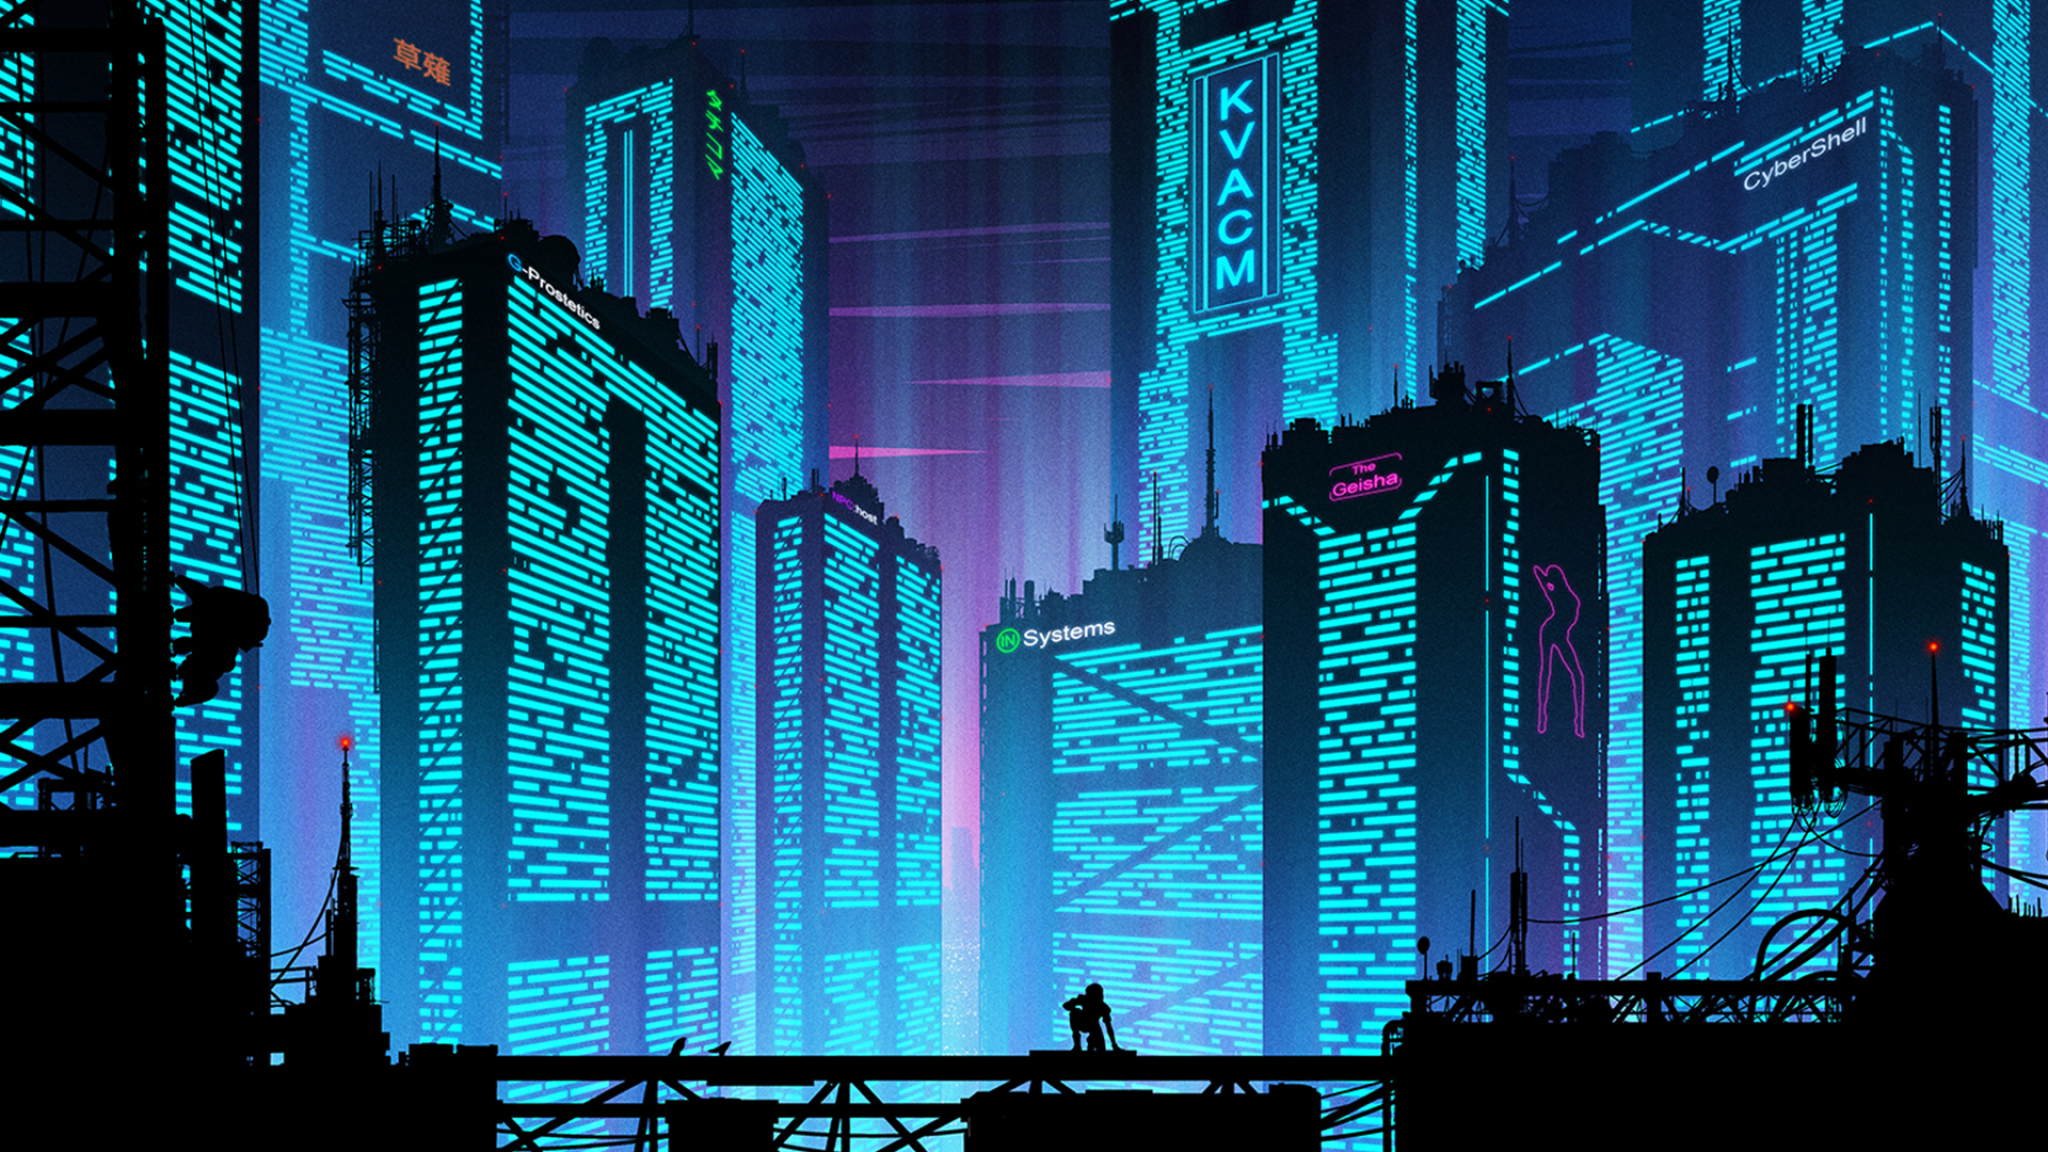 2048x1152 Cyberpunk Futuristic New Port City 2048x1152 Resolution